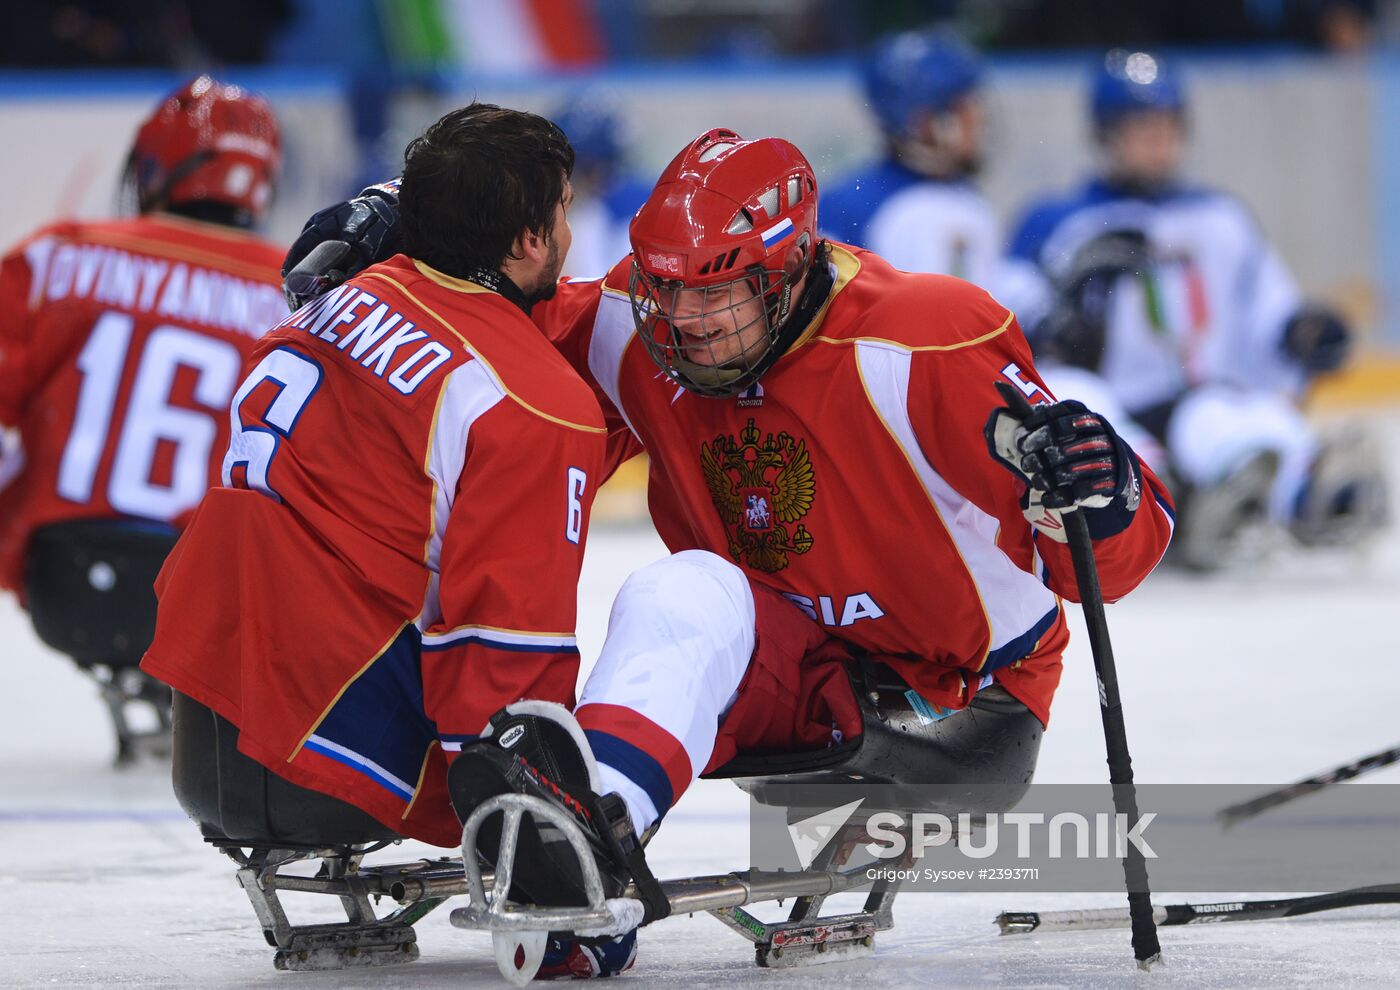 2014 Winter Paralympics. Ice sledge hockey. Russia vs. Italy